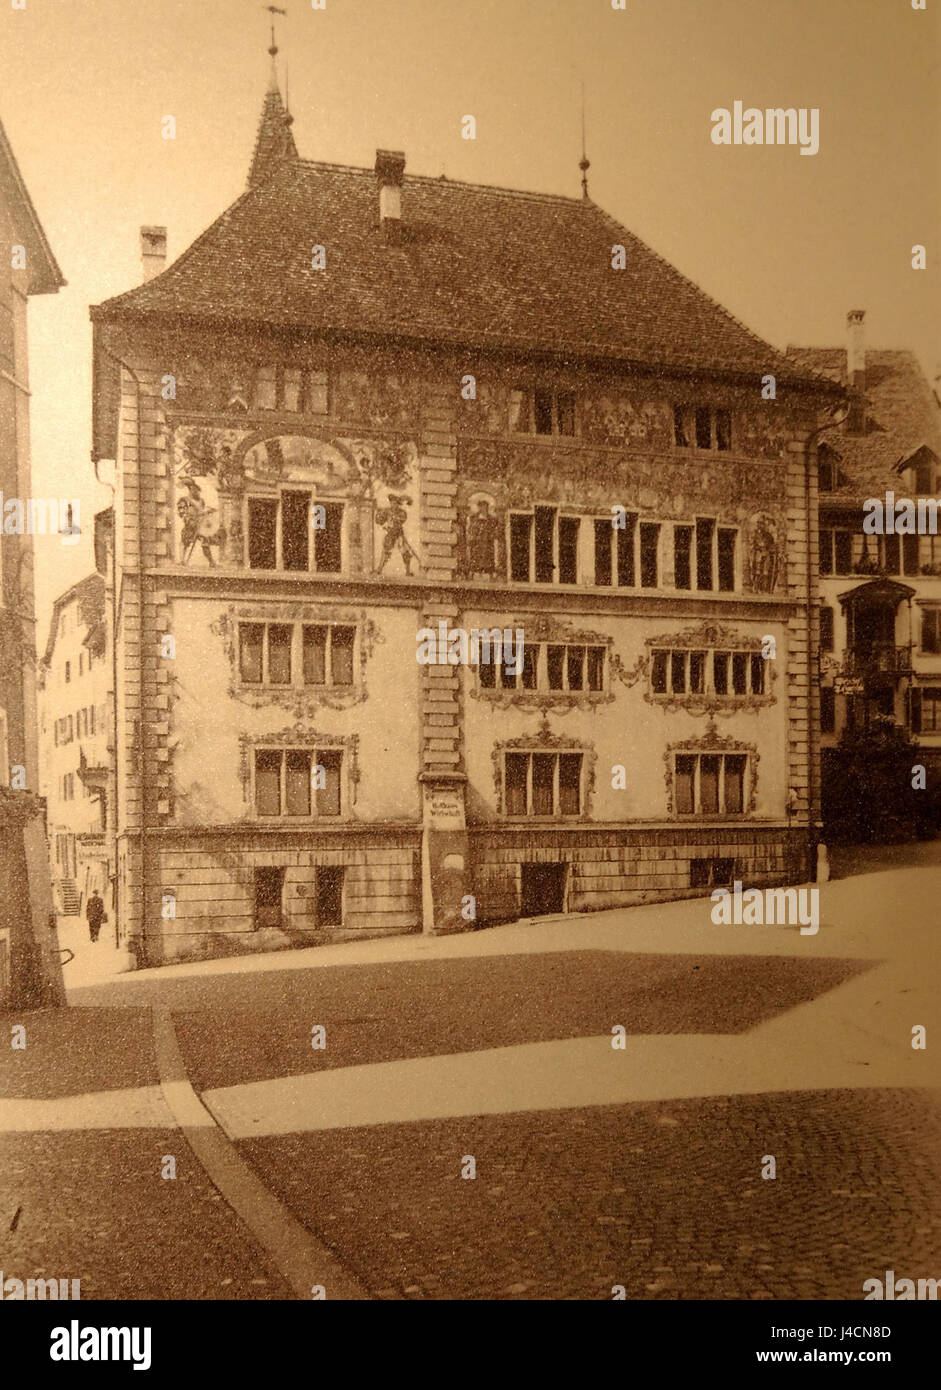 Rathaus Rapperswil mit Fassadenmalerei von 1902, Max Diener, um 1910, Stadtarchiv Rapperswil Jona 2012 12 01 16 57 31 (P7700) Stock Photo